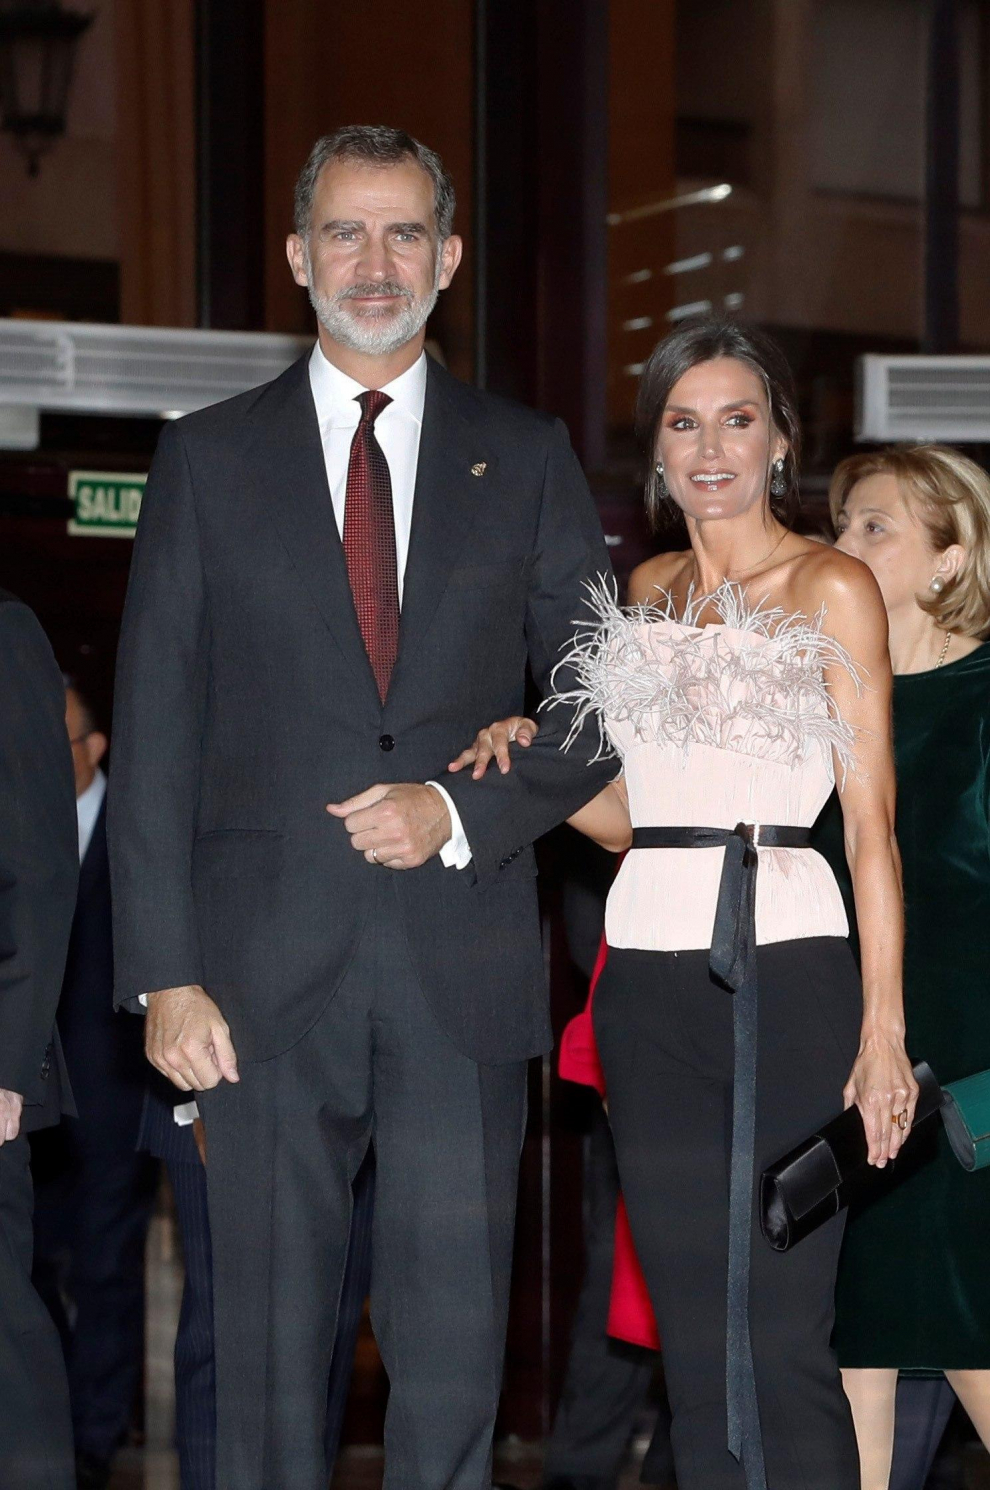 La reina Letizia lució este jueves por la noche en el concierto que presidieron en Oviedo un diseño del aragonés Antonio Burillo.